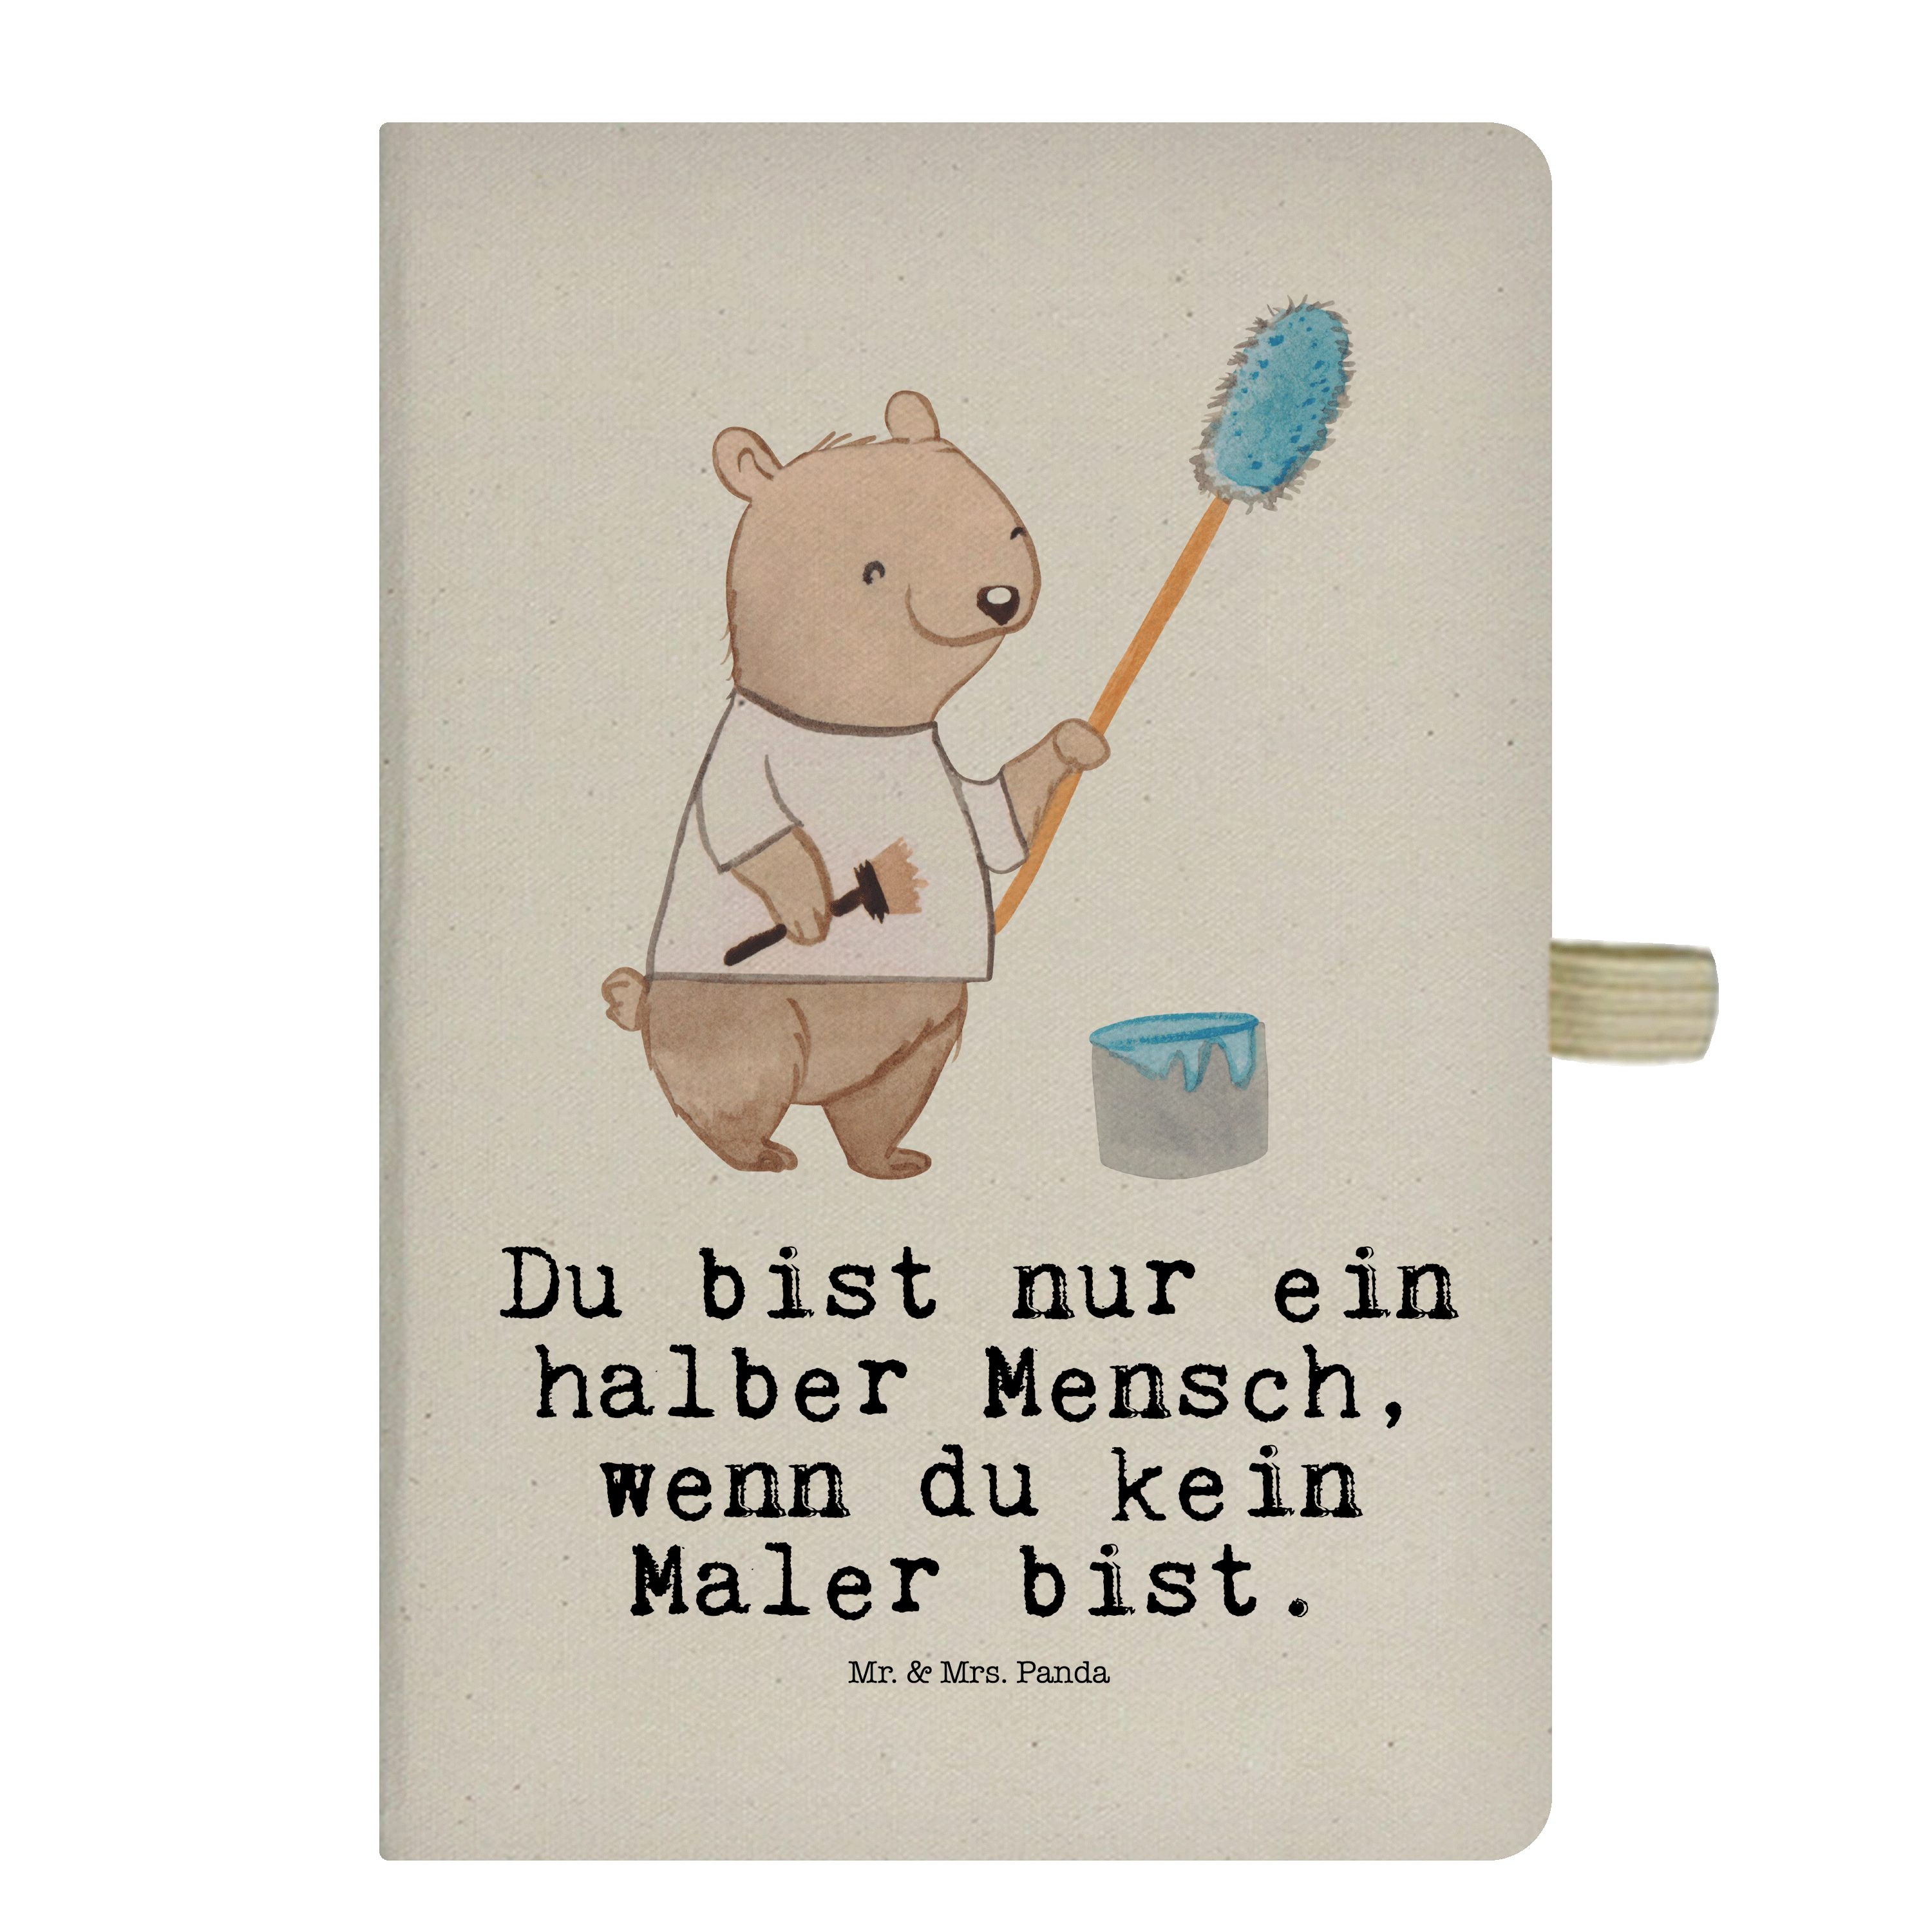 Mr. & Mrs. Panda Notizbuch Maler mit Herz - Transparent - Geschenk, Notizen, Beruf, Schenken, Ad Mr. & Mrs. Panda